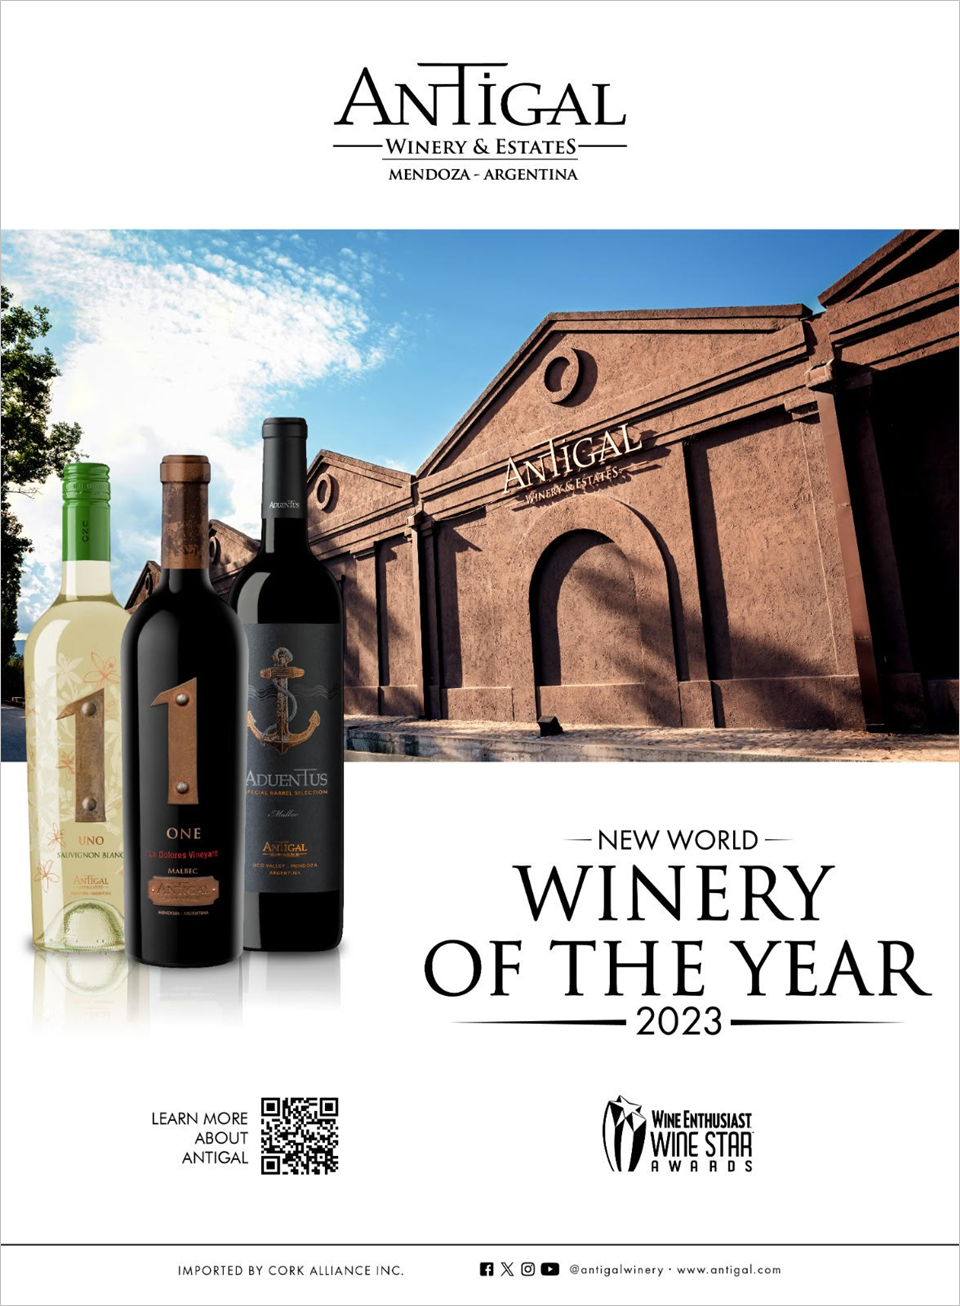 유명 와인 메거진 와인인수지어스트(Wine Enthusiast) 주최 와인 스타 어워즈에서 '올해의 와이너리(Winery of the Year)'로 선정된 '안티갈(Antigal)'